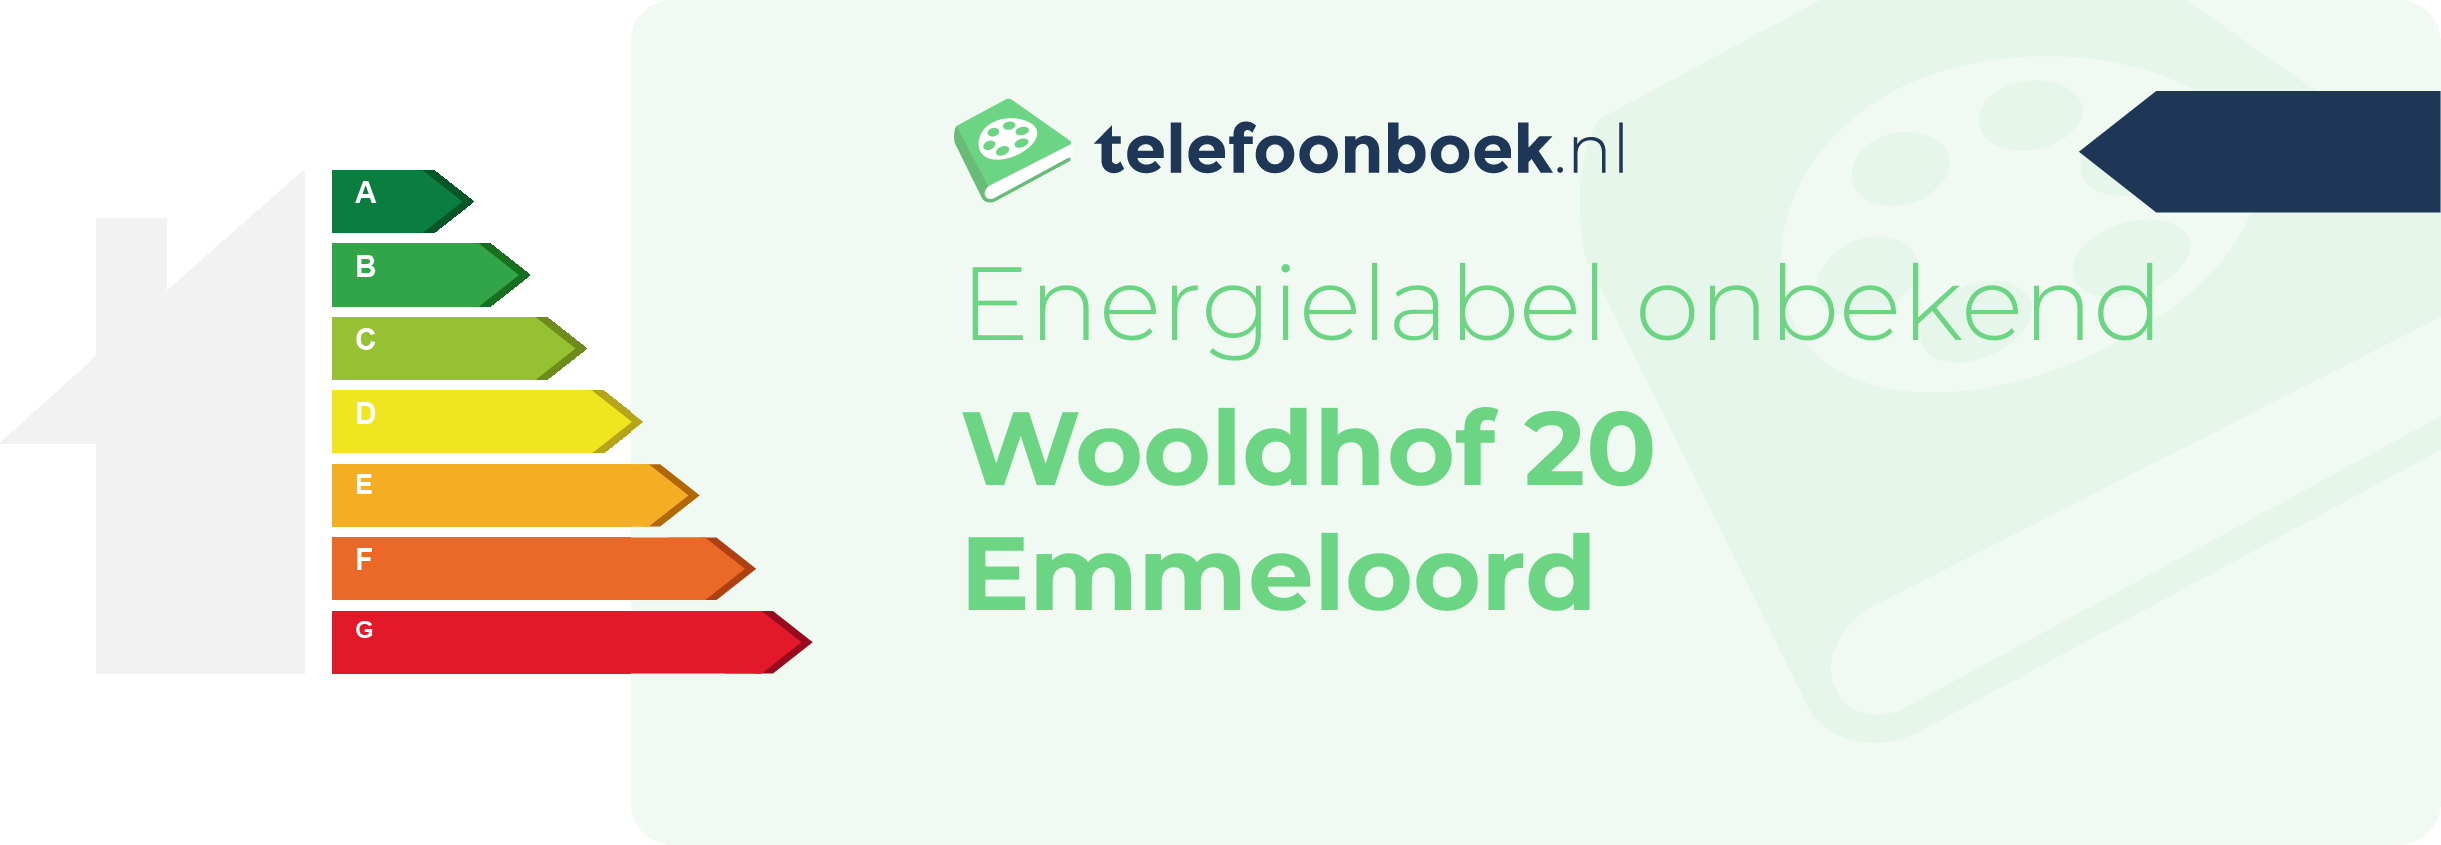 Energielabel Wooldhof 20 Emmeloord